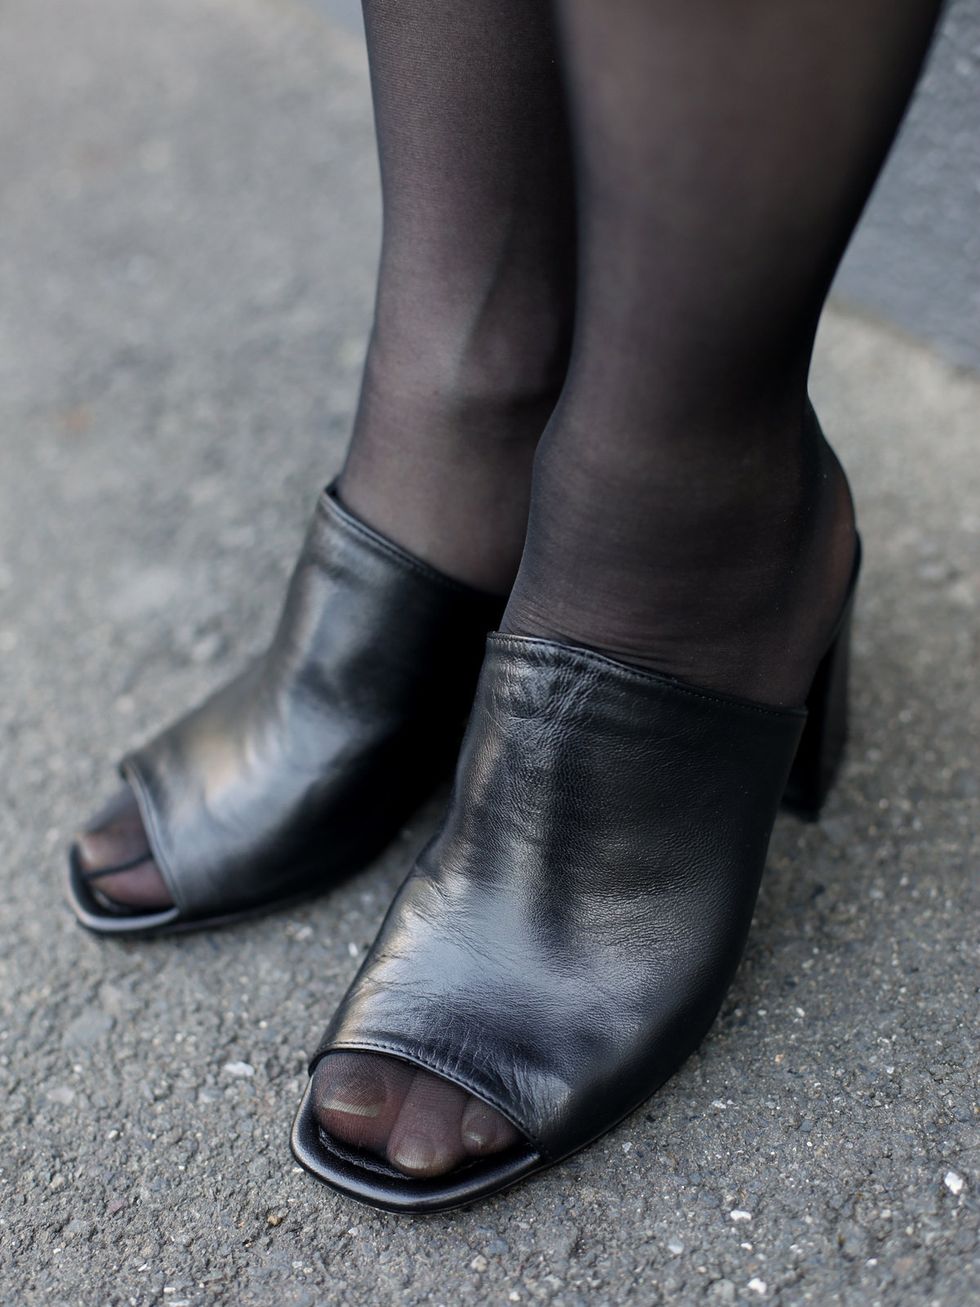 Footwear, Shoe, Black, Human leg, Ankle, Leg, Brown, Joint, Fashion, Sandal, 